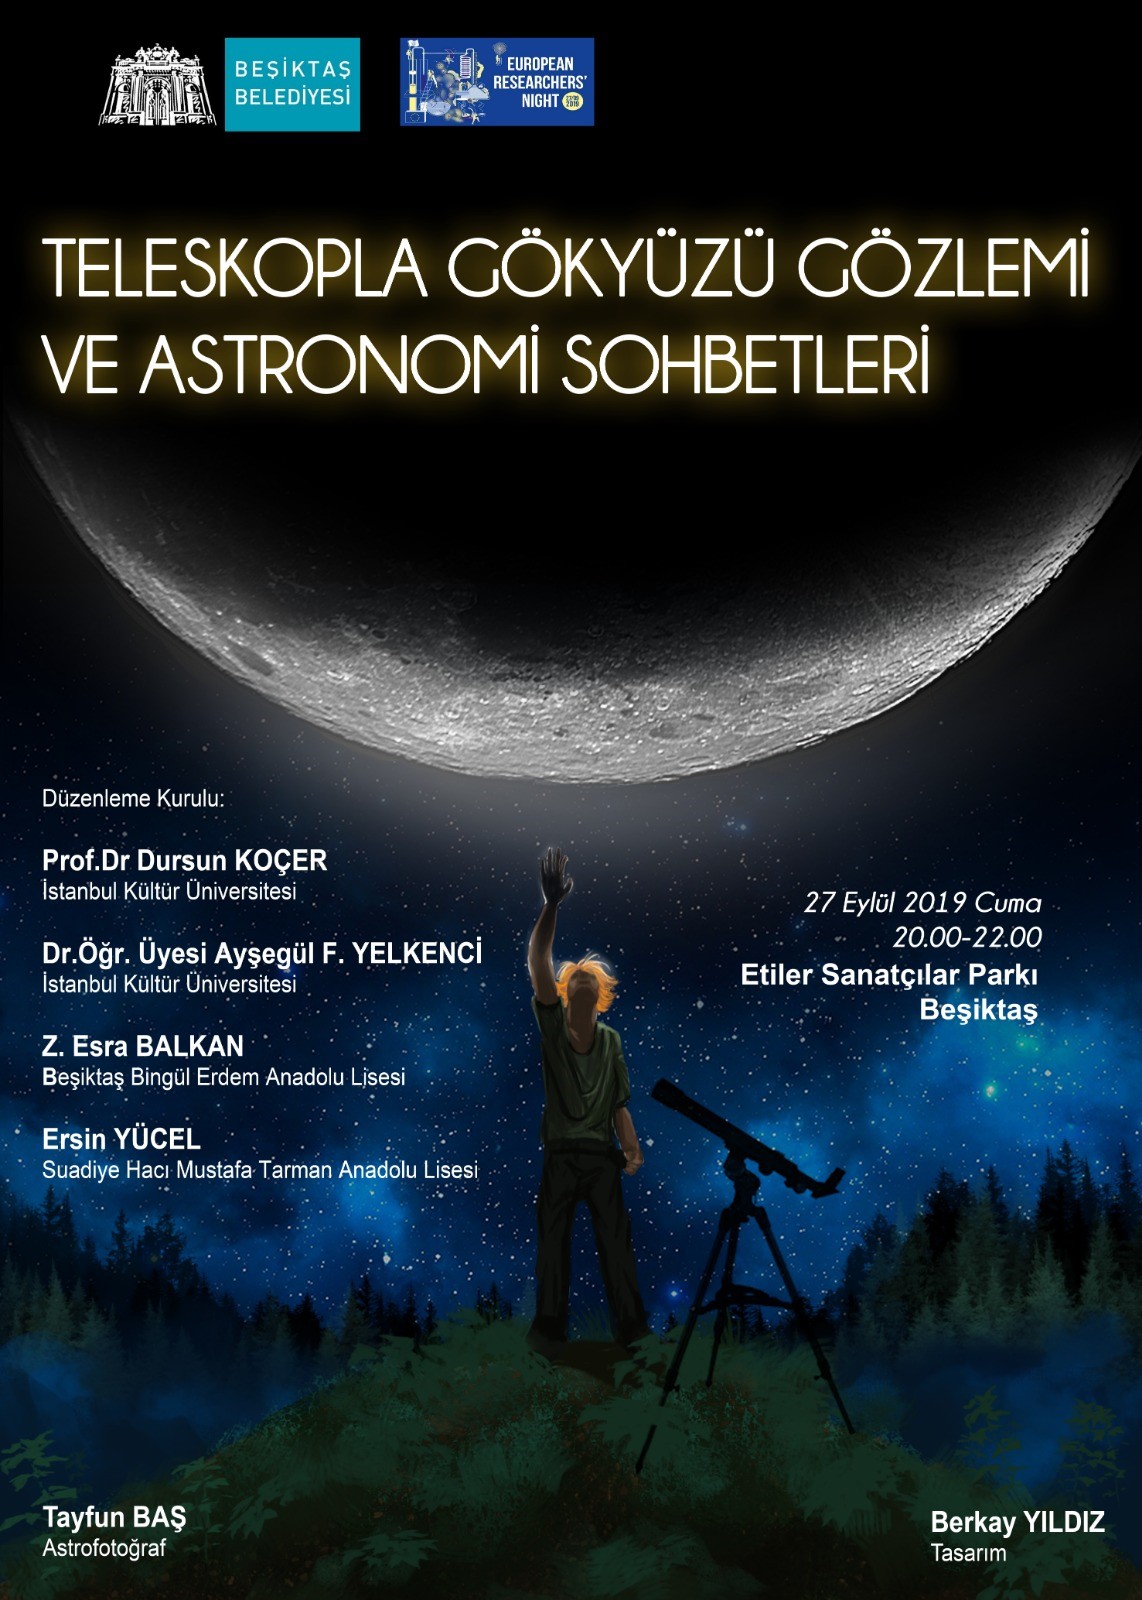 Teleskopla Gökyüzü Gözlemi ve Astronomi Sohbetleri